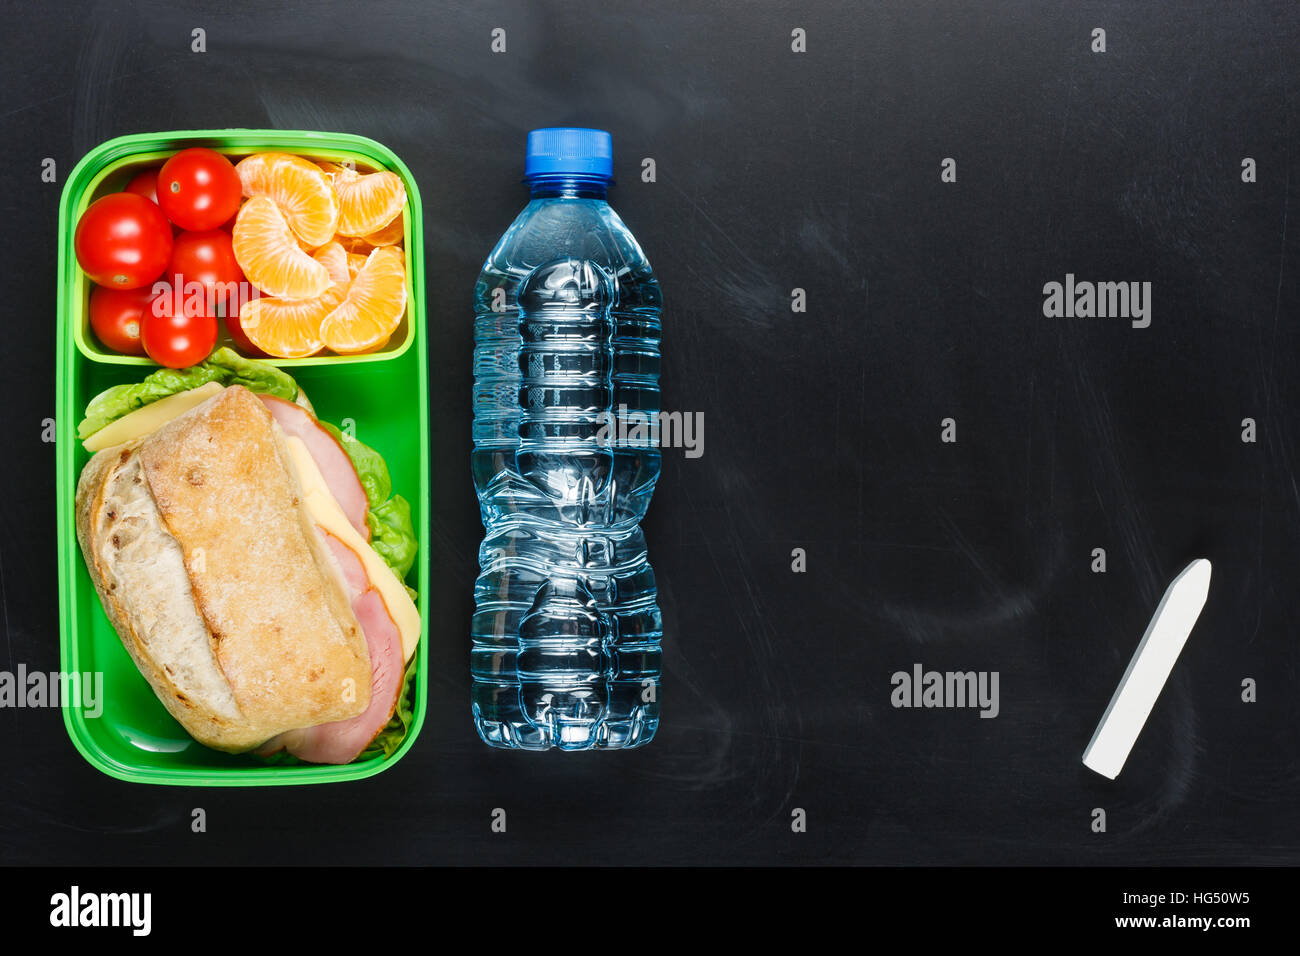 Sandwich, pomodorini, mandarino in plastica scatola di pranzo e una bottiglia di acqua sulla lavagna. Foto Stock